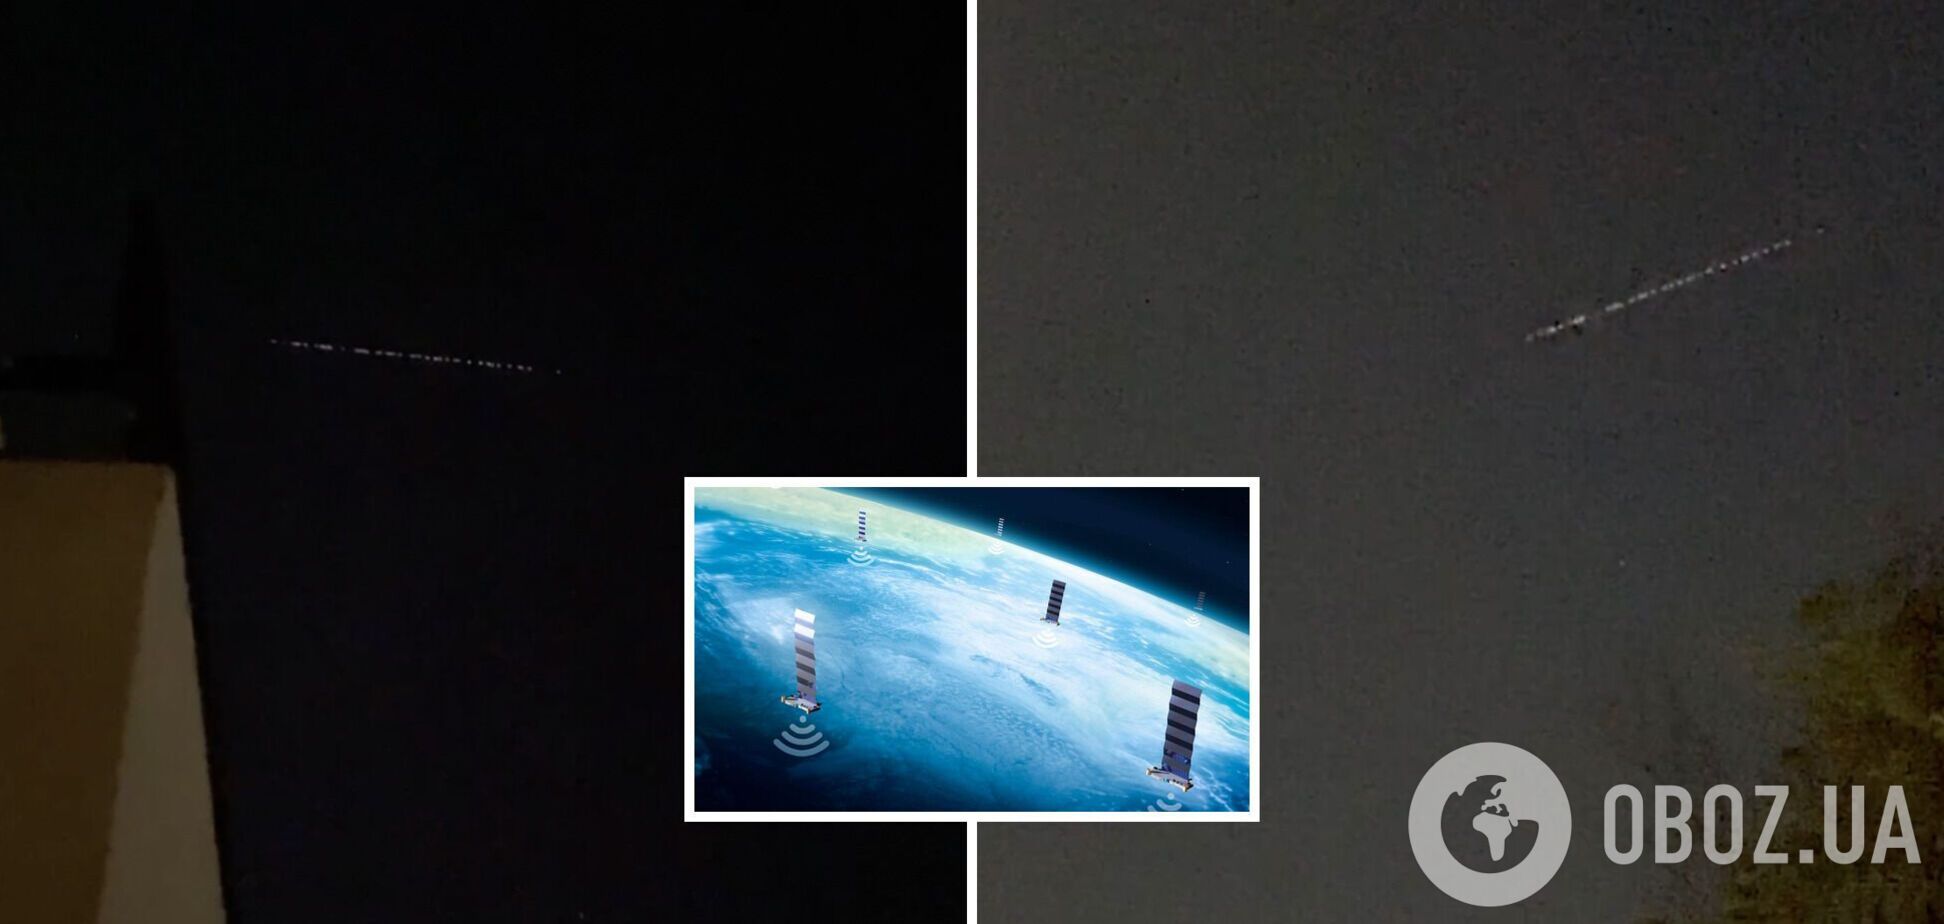 Раздают интернет для Starlink: над Украиной пролетают спутники Илона Маска. Видео